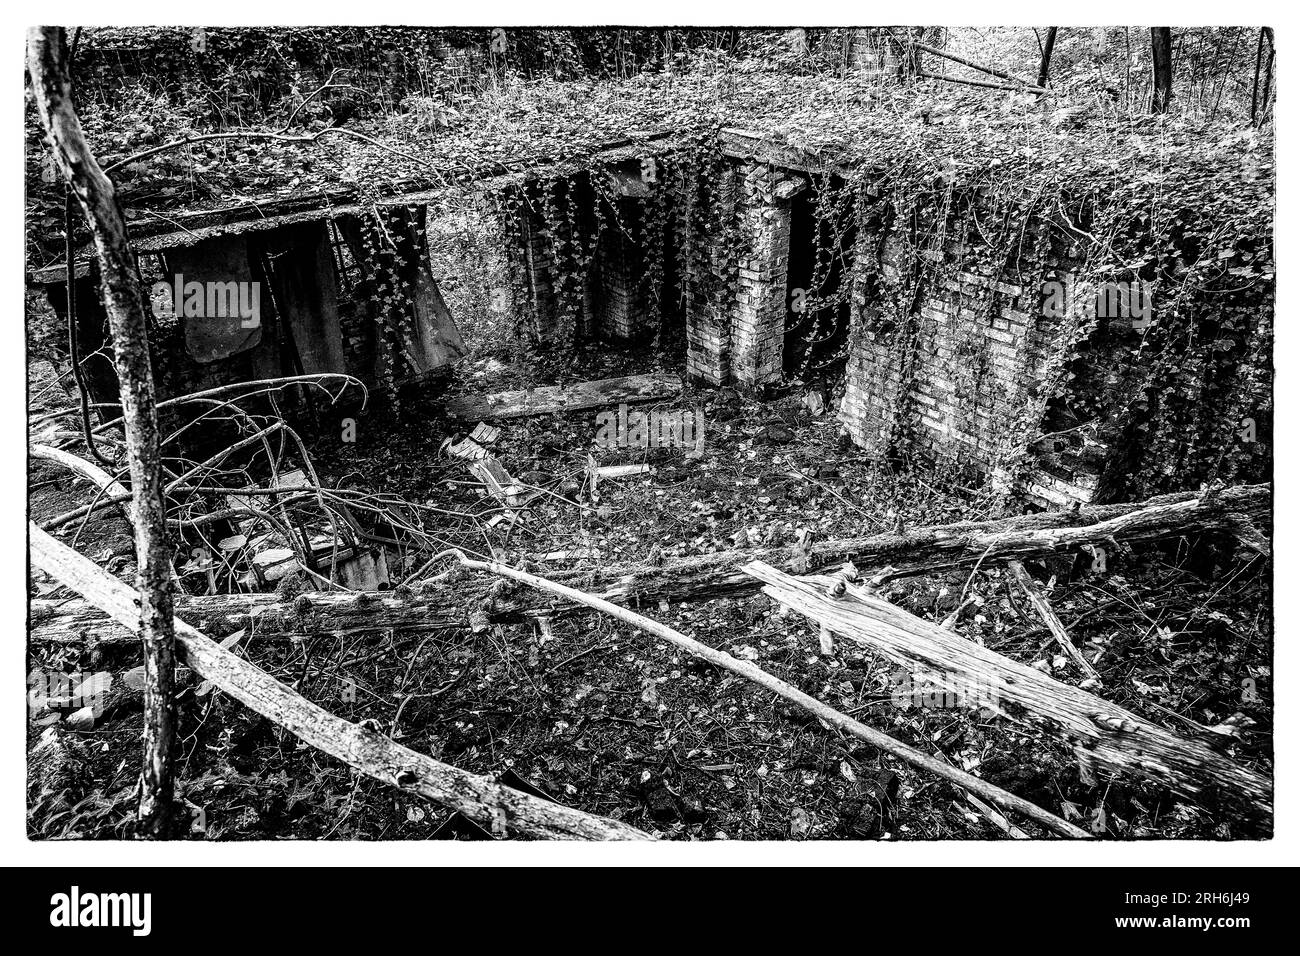 Friche industrielle dans les bois - Batiments a l'abandon emprisonnes par la nature, le lierre et les racines |  Industrial wasteland - industrial bui Stock Photo